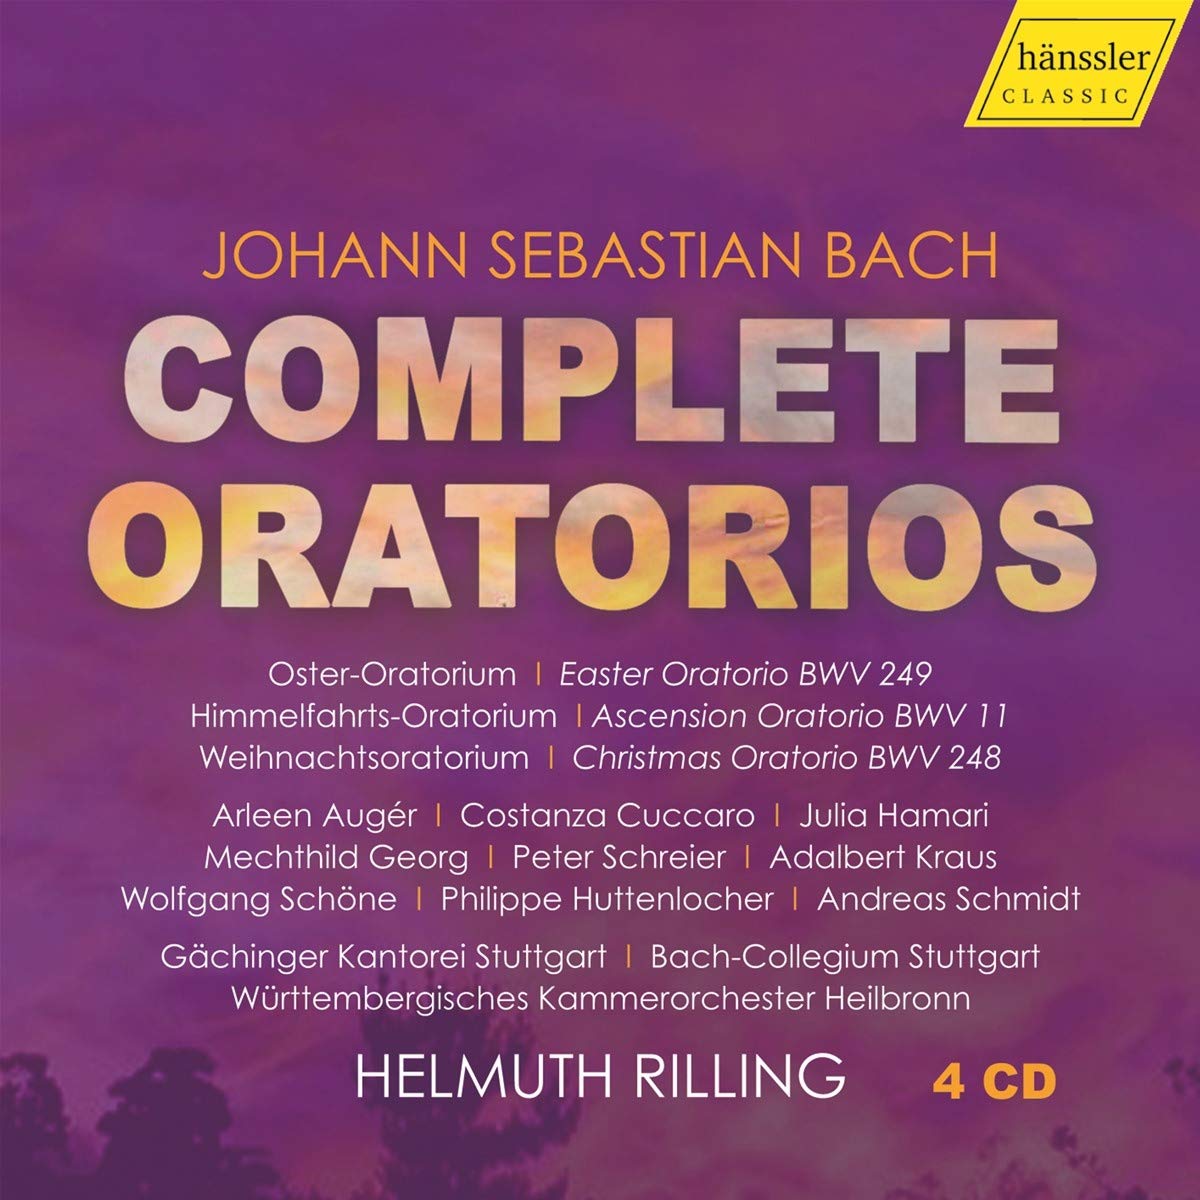 Audio Cd Johann Sebastian Bach - Complete Oratorios (4 Cd) NUOVO SIGILLATO, EDIZIONE DEL 08/11/2019 SUBITO DISPONIBILE